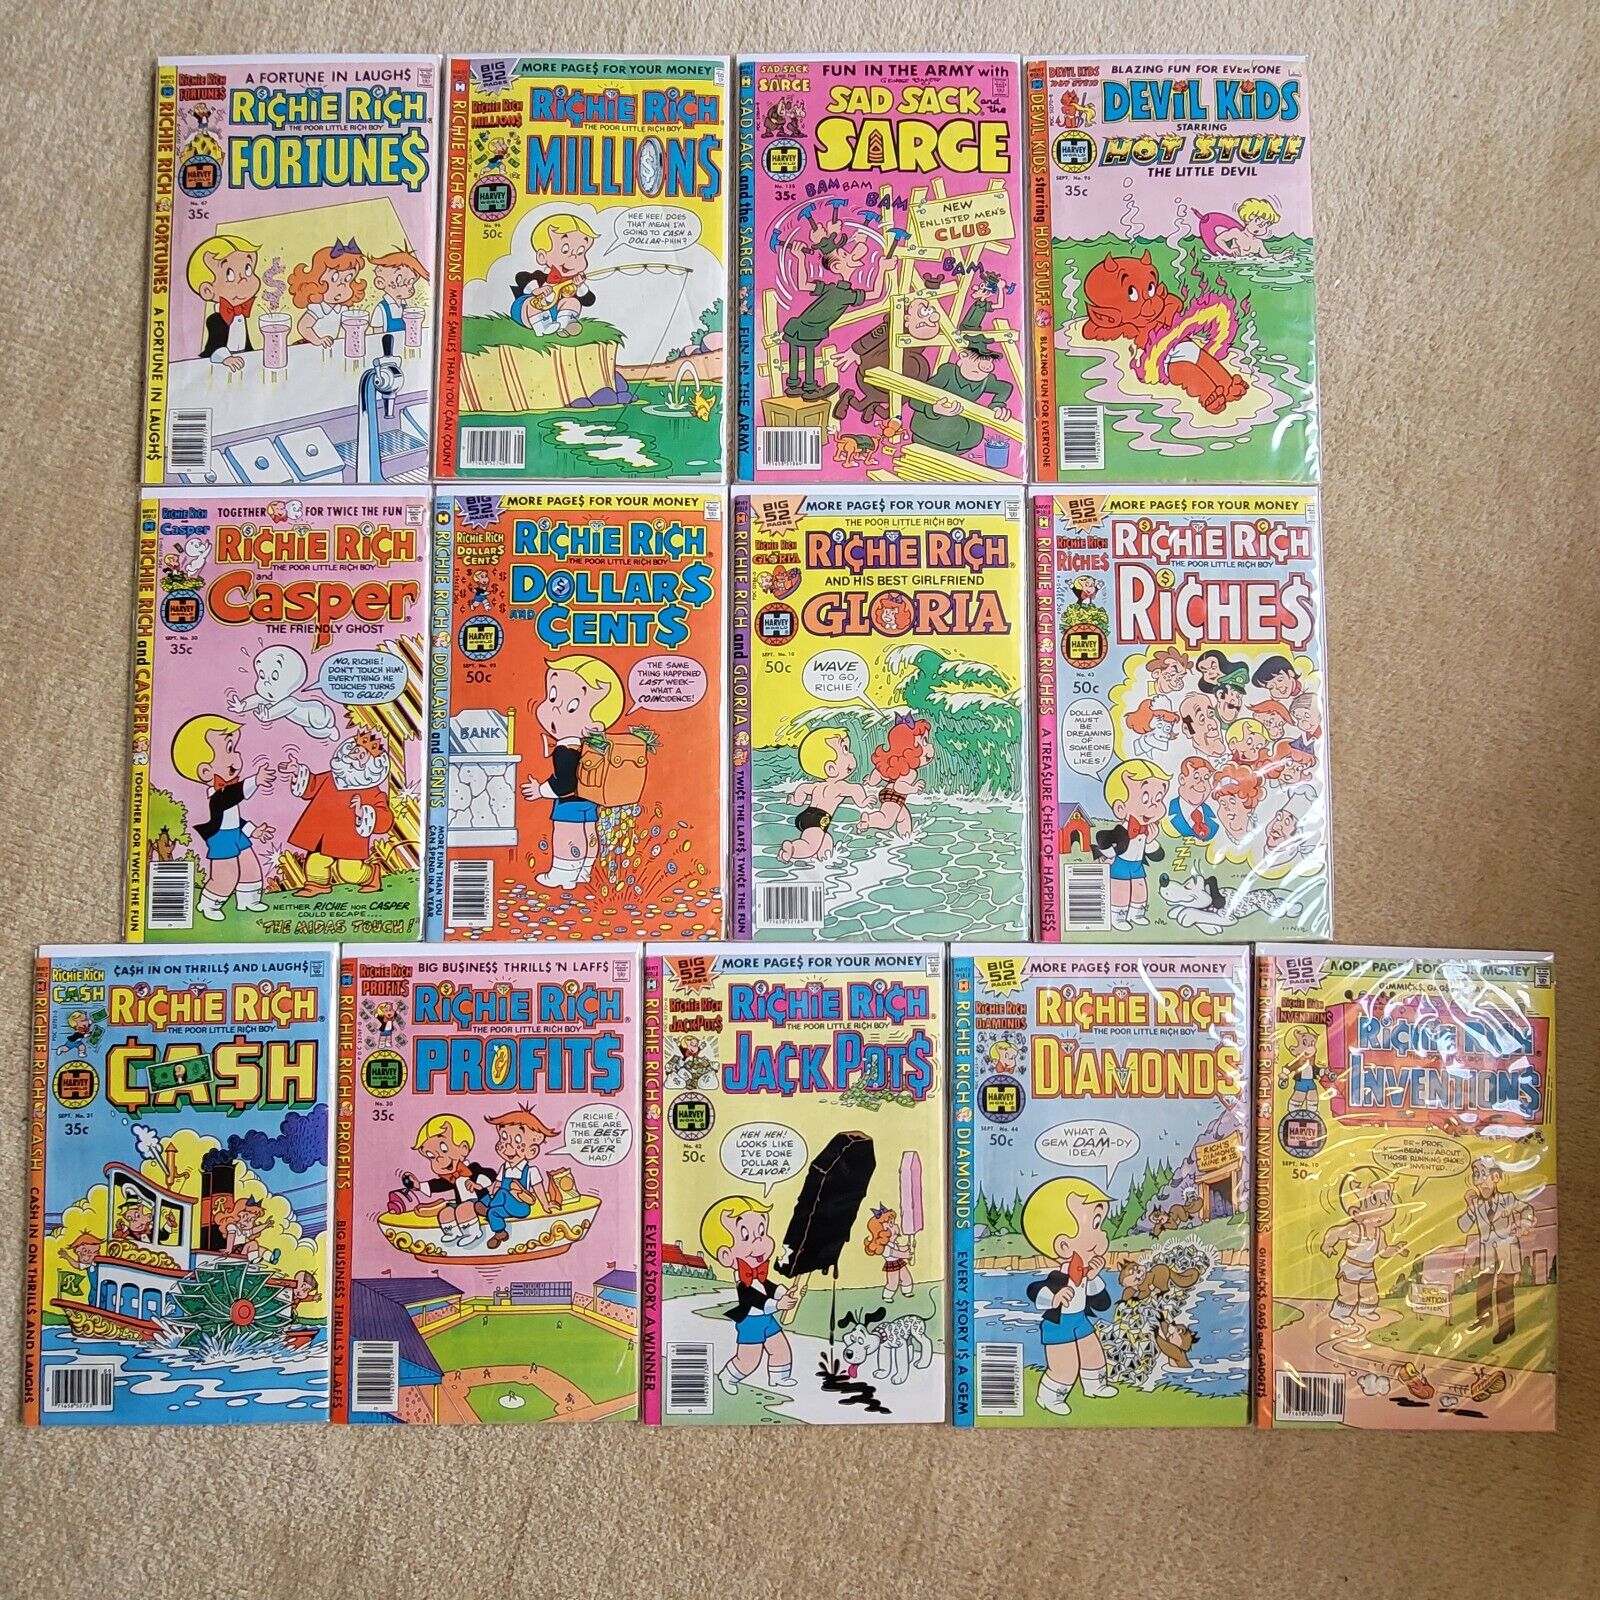 Lot of 11 Vintage RICHIE RICH Comics (1970's) + Sad Sack Sarge & Devil kids